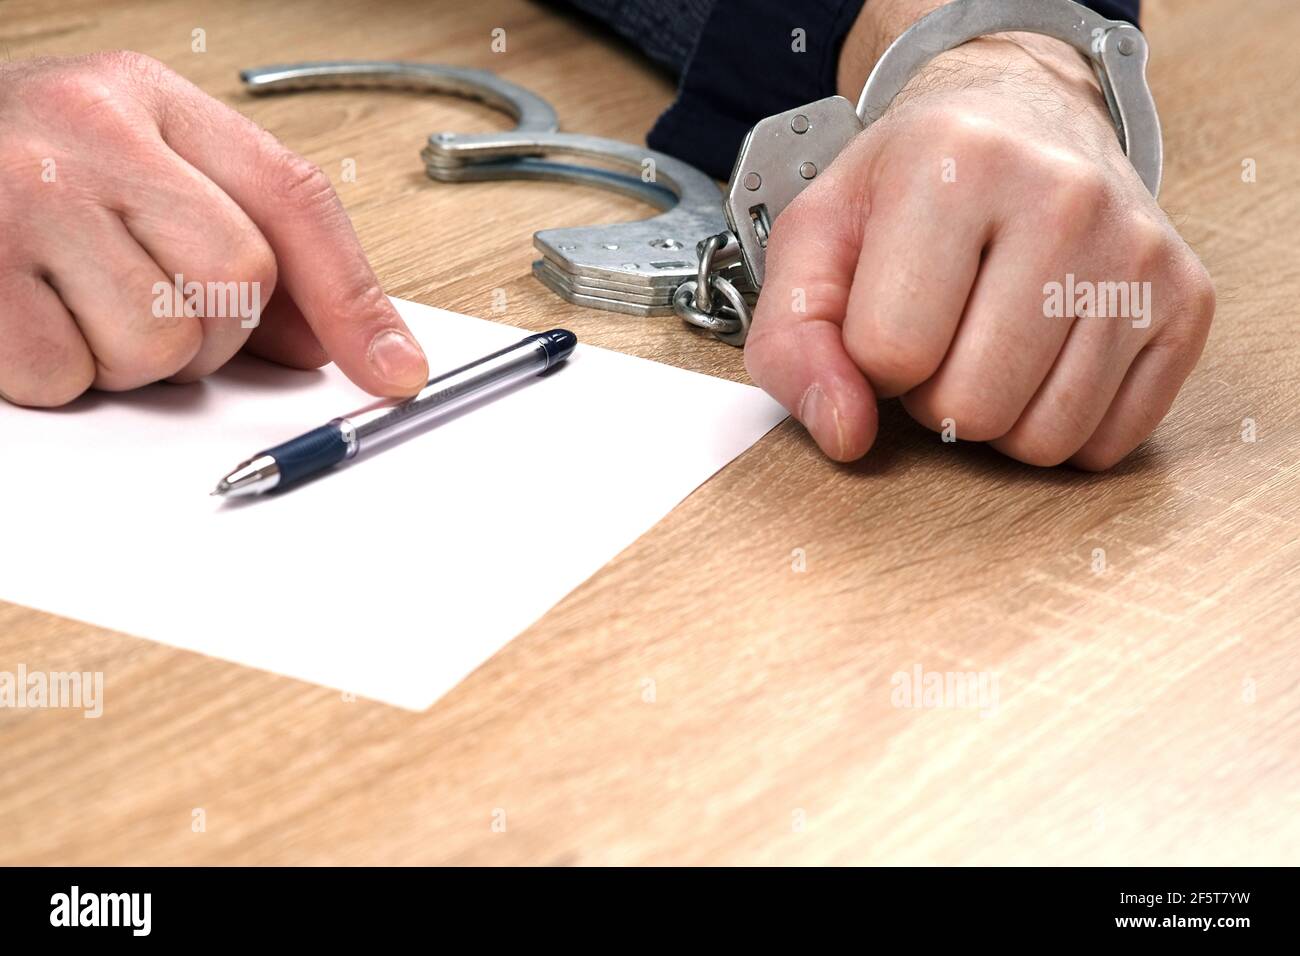 Un détenu au poste de police. Une main est menottée, l'autre est non  boutonnée, et il y a un stylo dans sa main pour écrire des explications.  Arrestation, mise en liberté sous